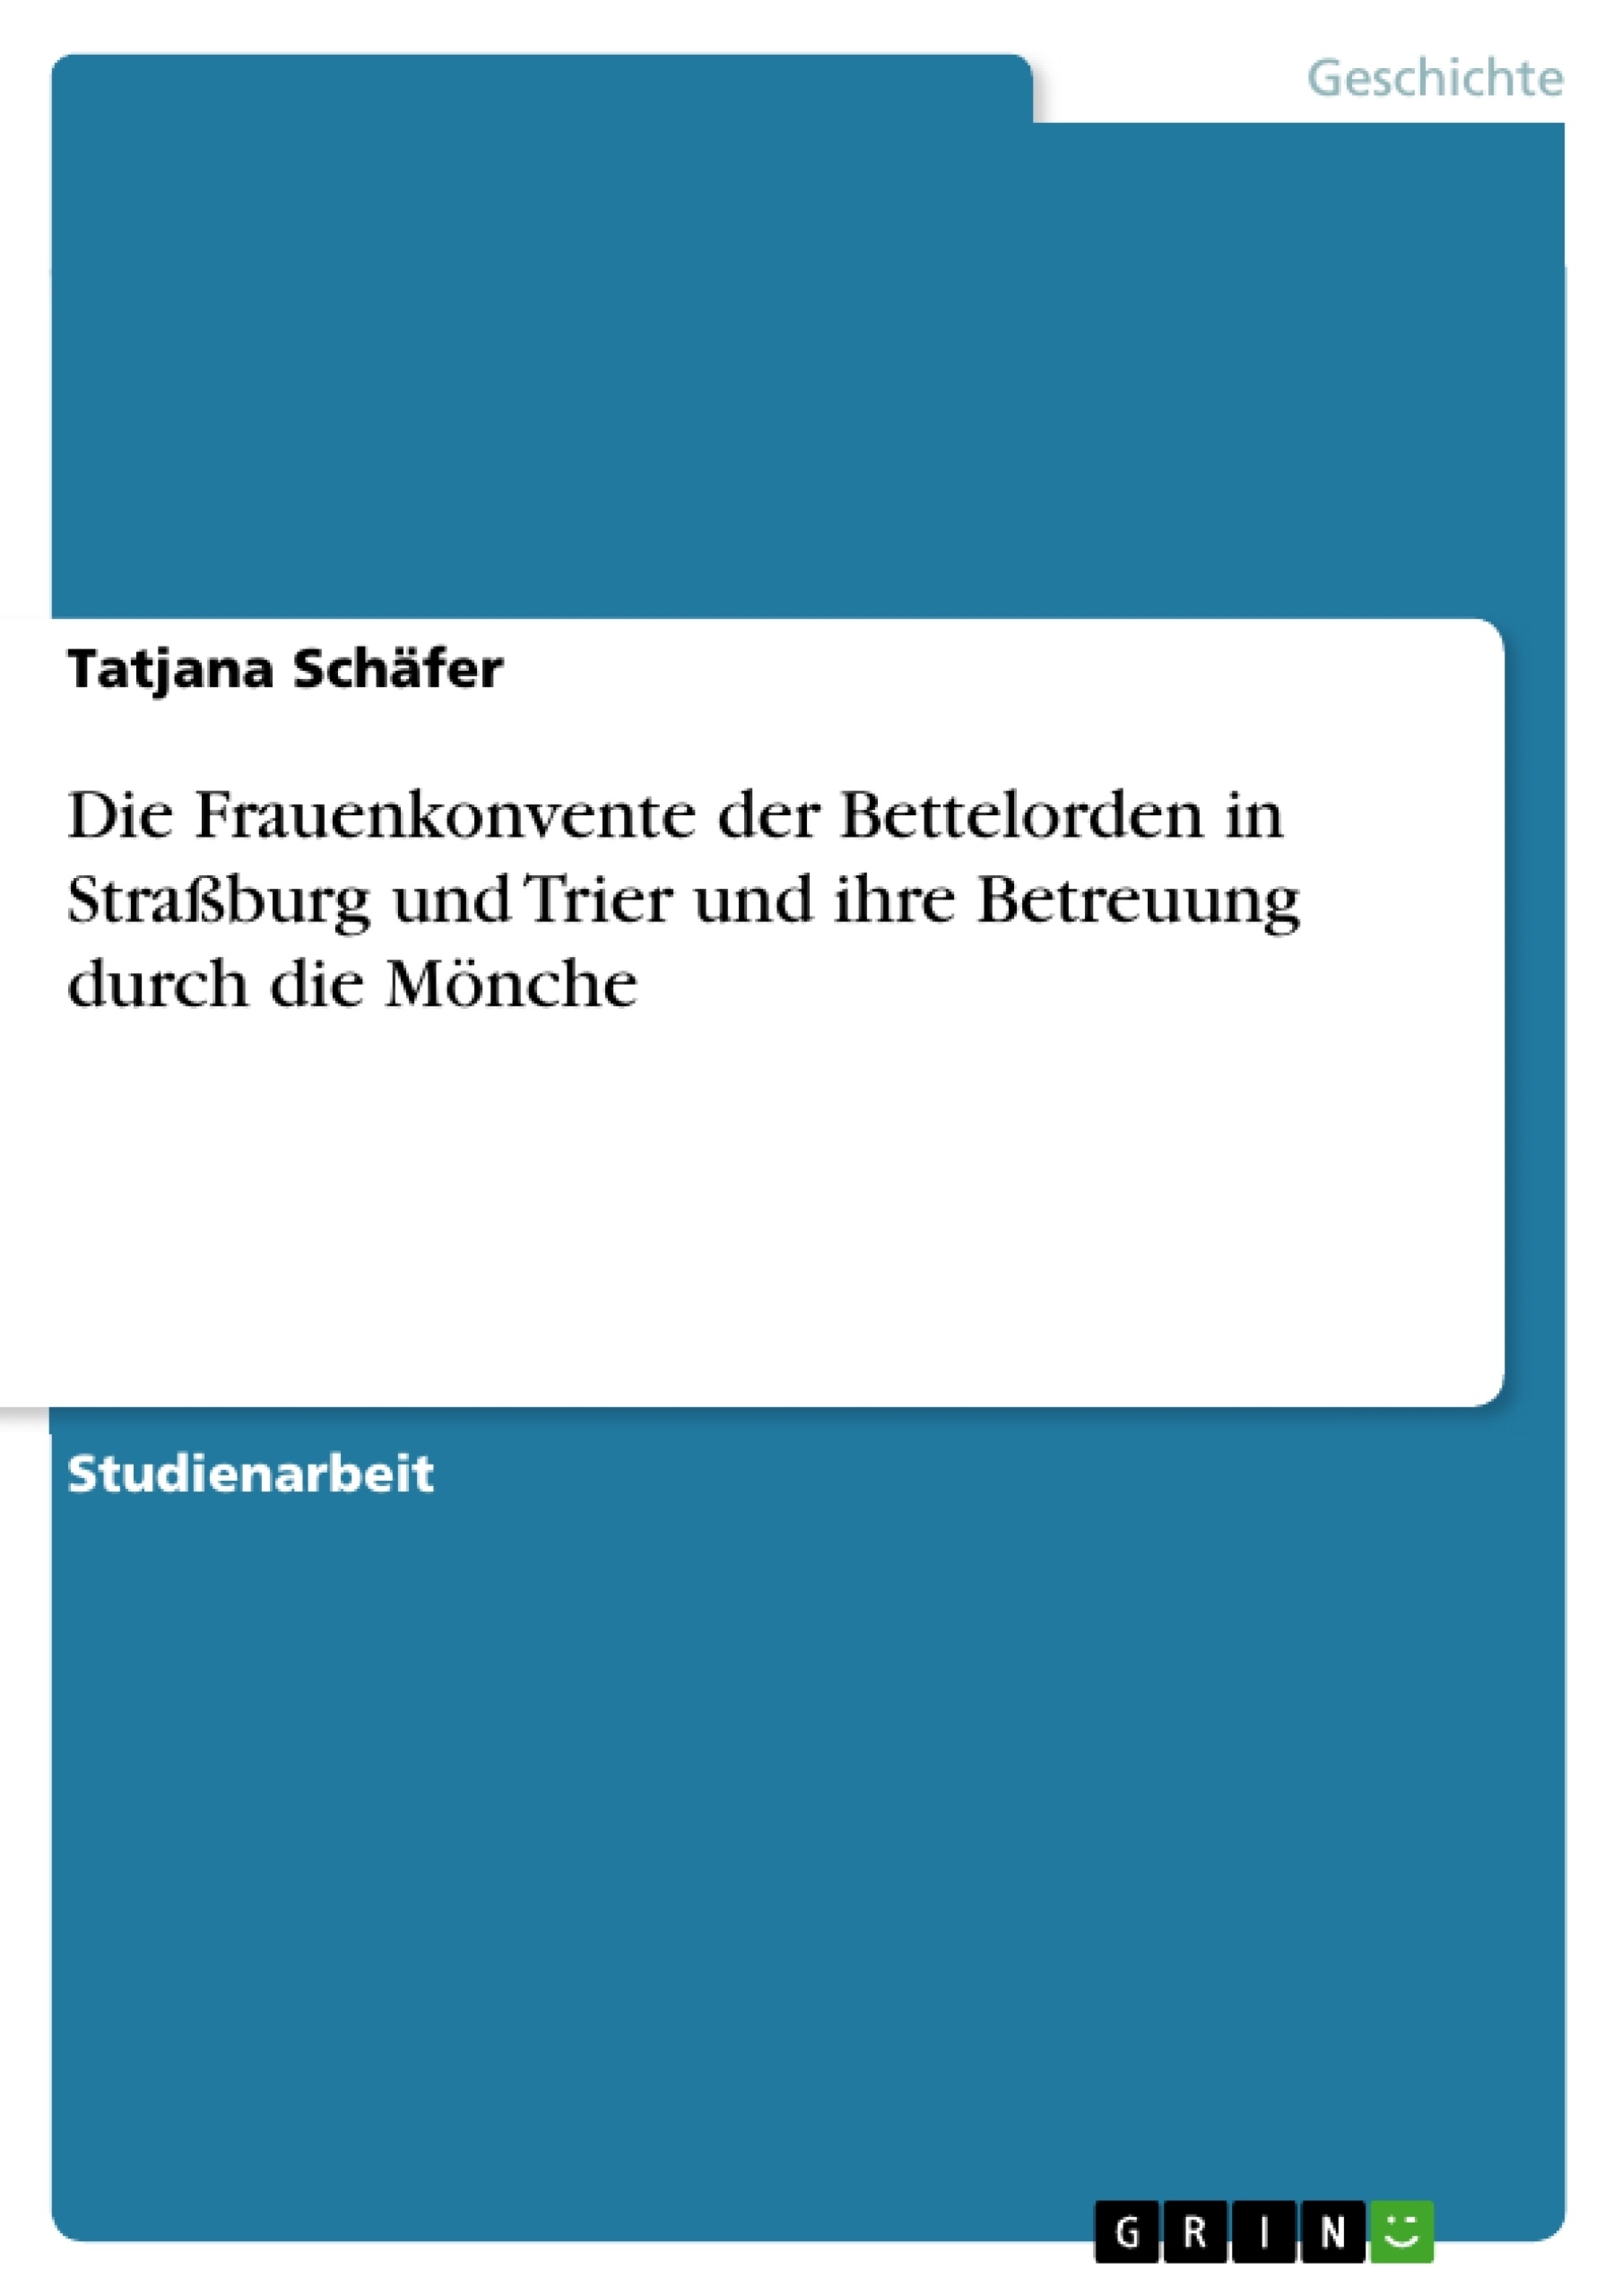 Title: Die Frauenkonvente der Bettelorden in Straßburg und Trier und ihre Betreuung durch die Mönche